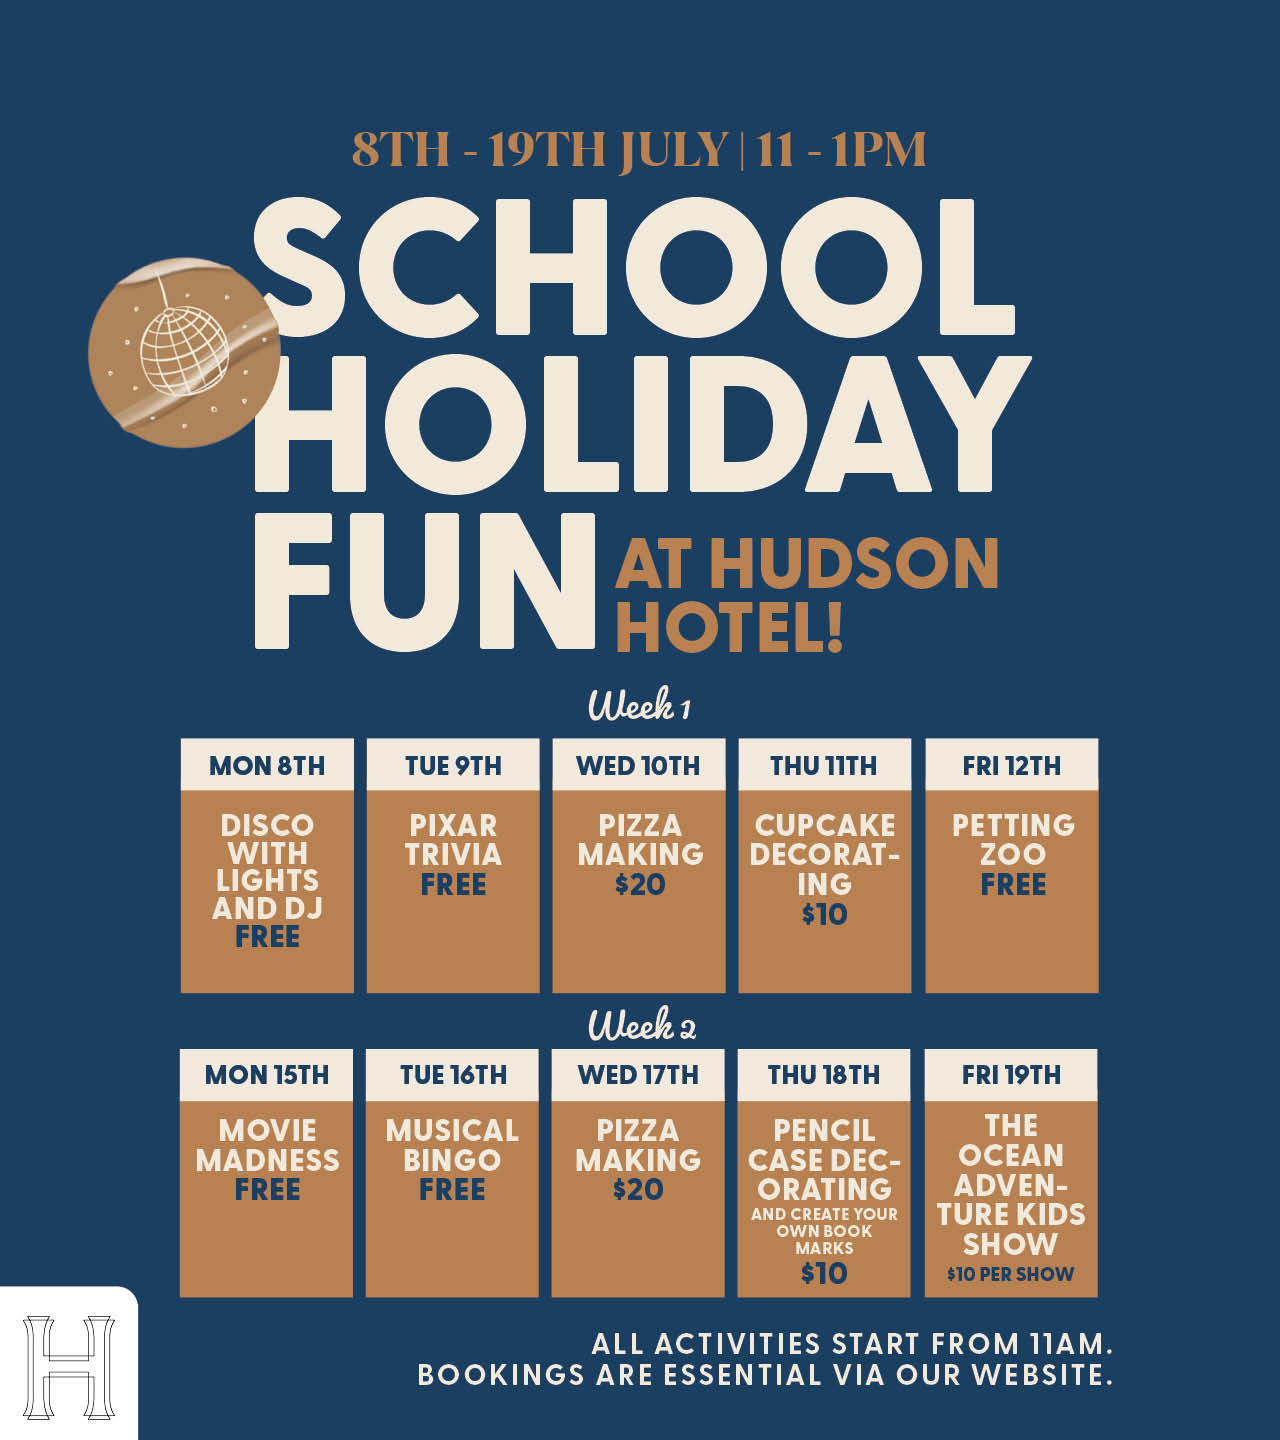 Winter School Holidays at Hudson Hotel